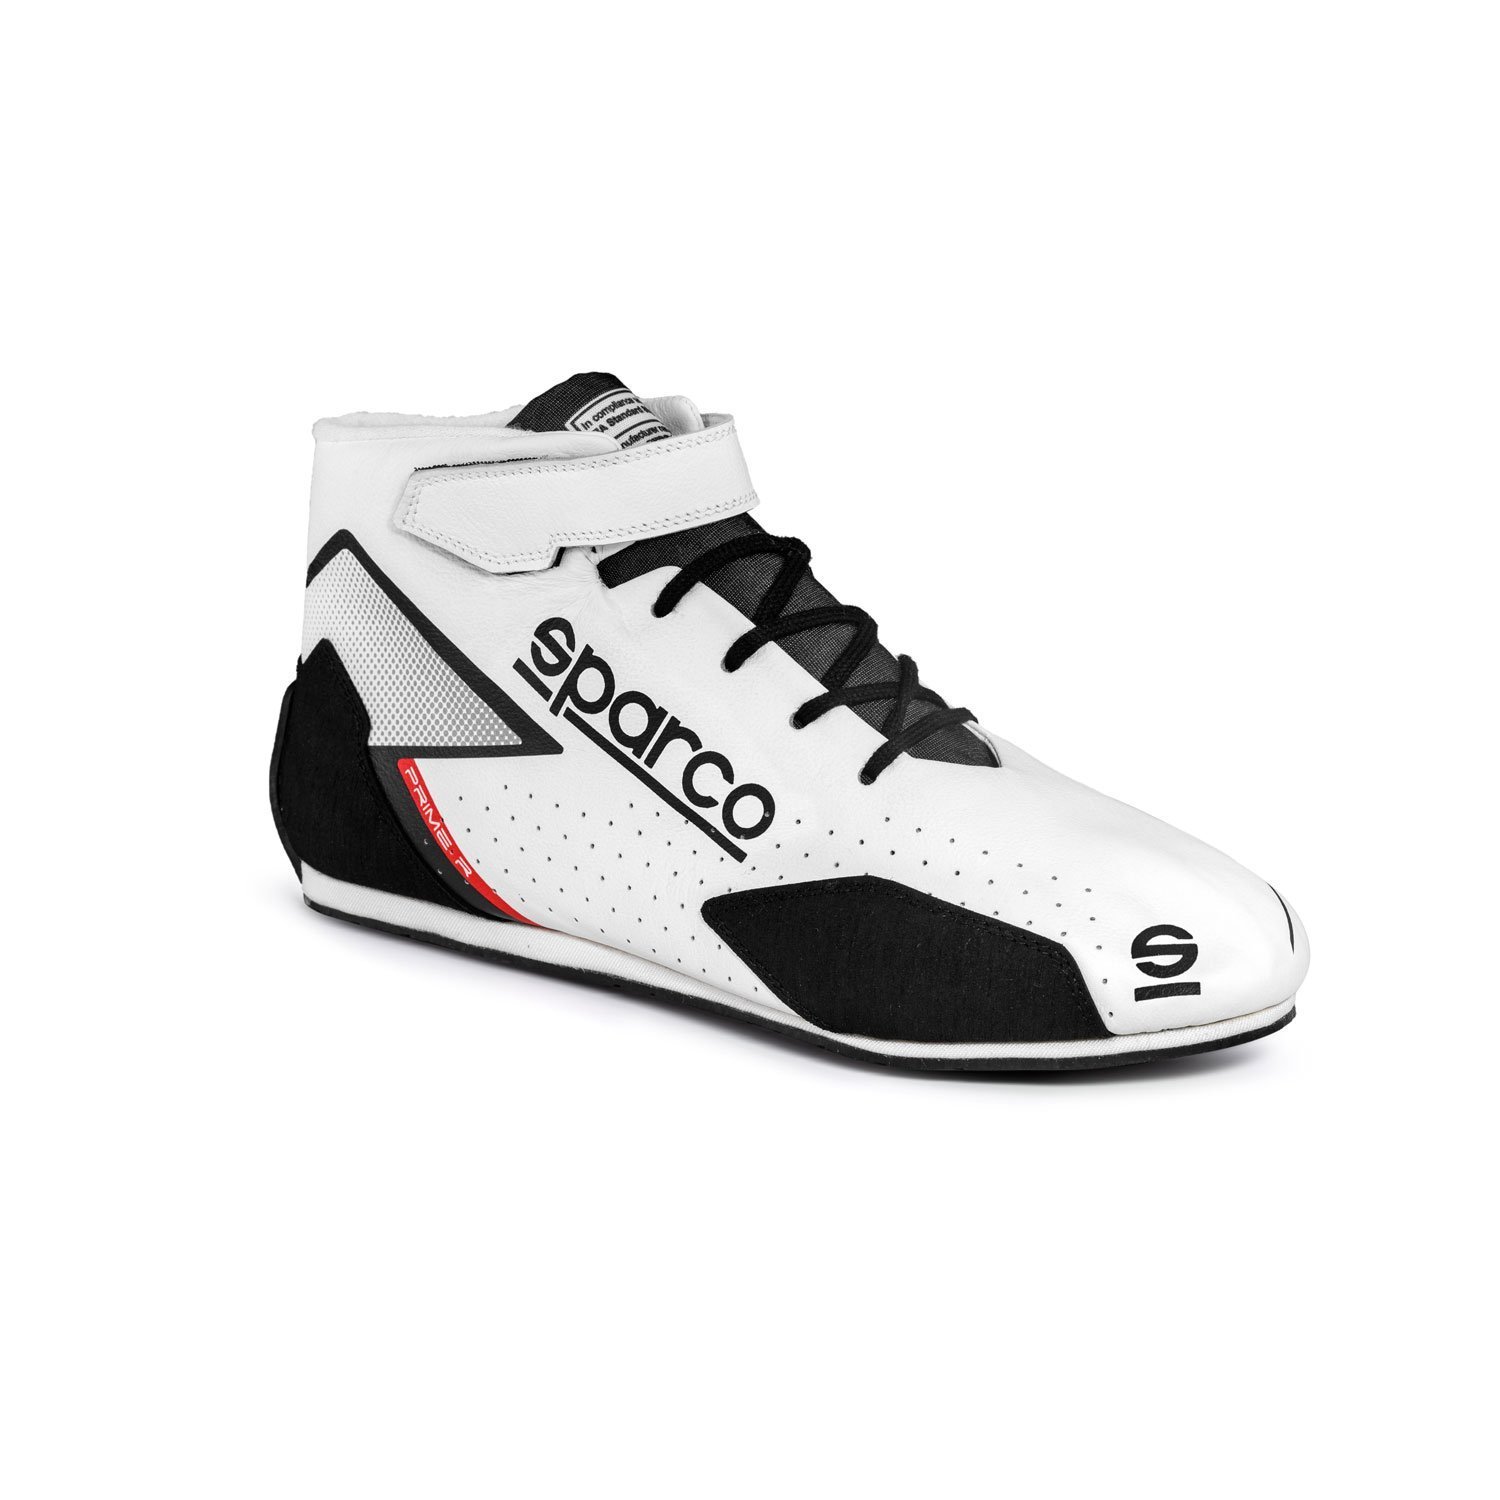 Chaussures de course Sparco PRIME R blanches (approbation FIA) Blanc, Vêtements de course \ Des chaussures Équipes \ Équipement de sport  automobile \ Sparco